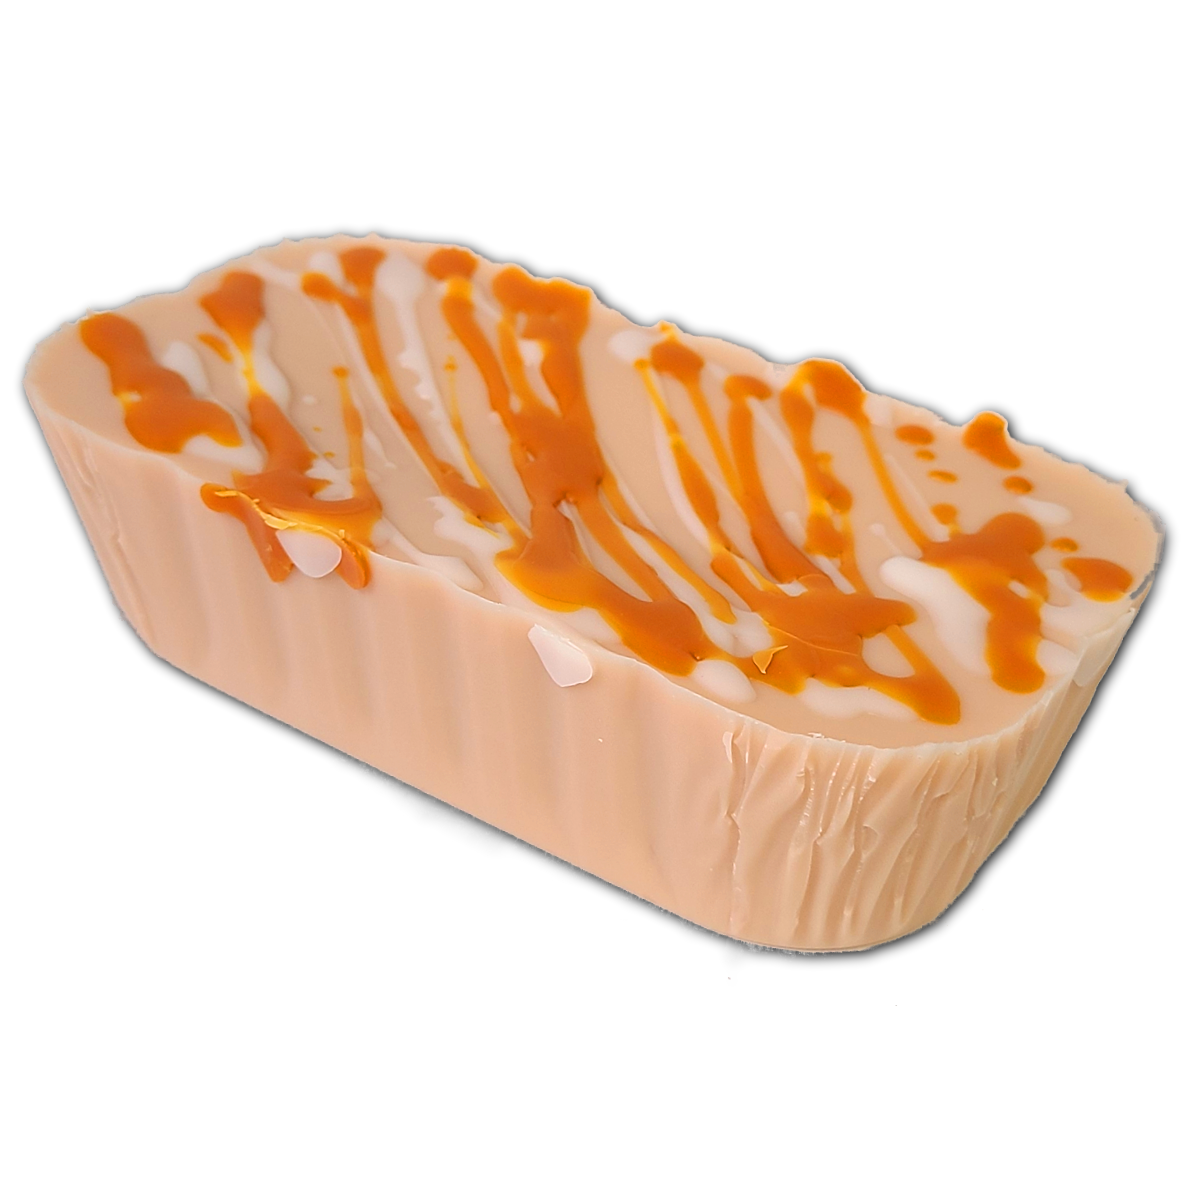 Orange Buttercream Cupcake - 10oz Loaf Pan